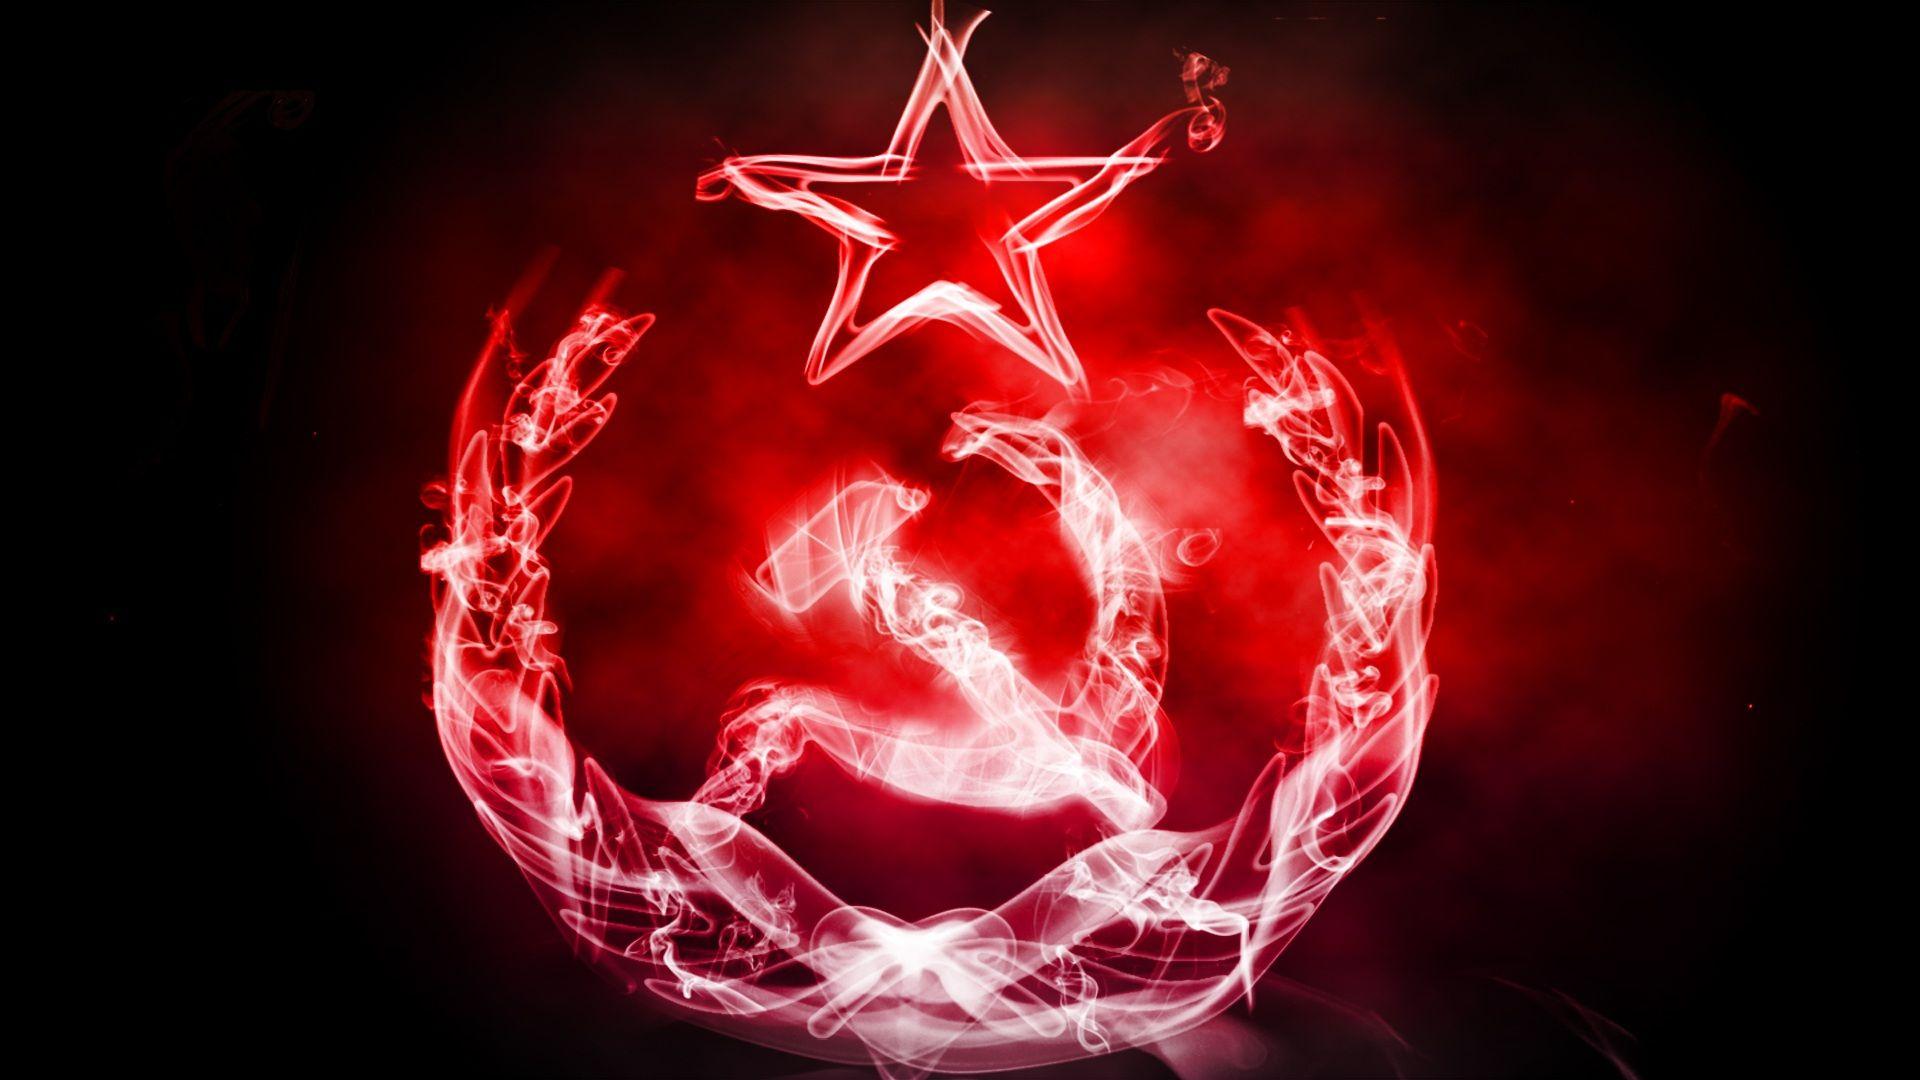 communism, Russia, CCCP, USSR wallpaper